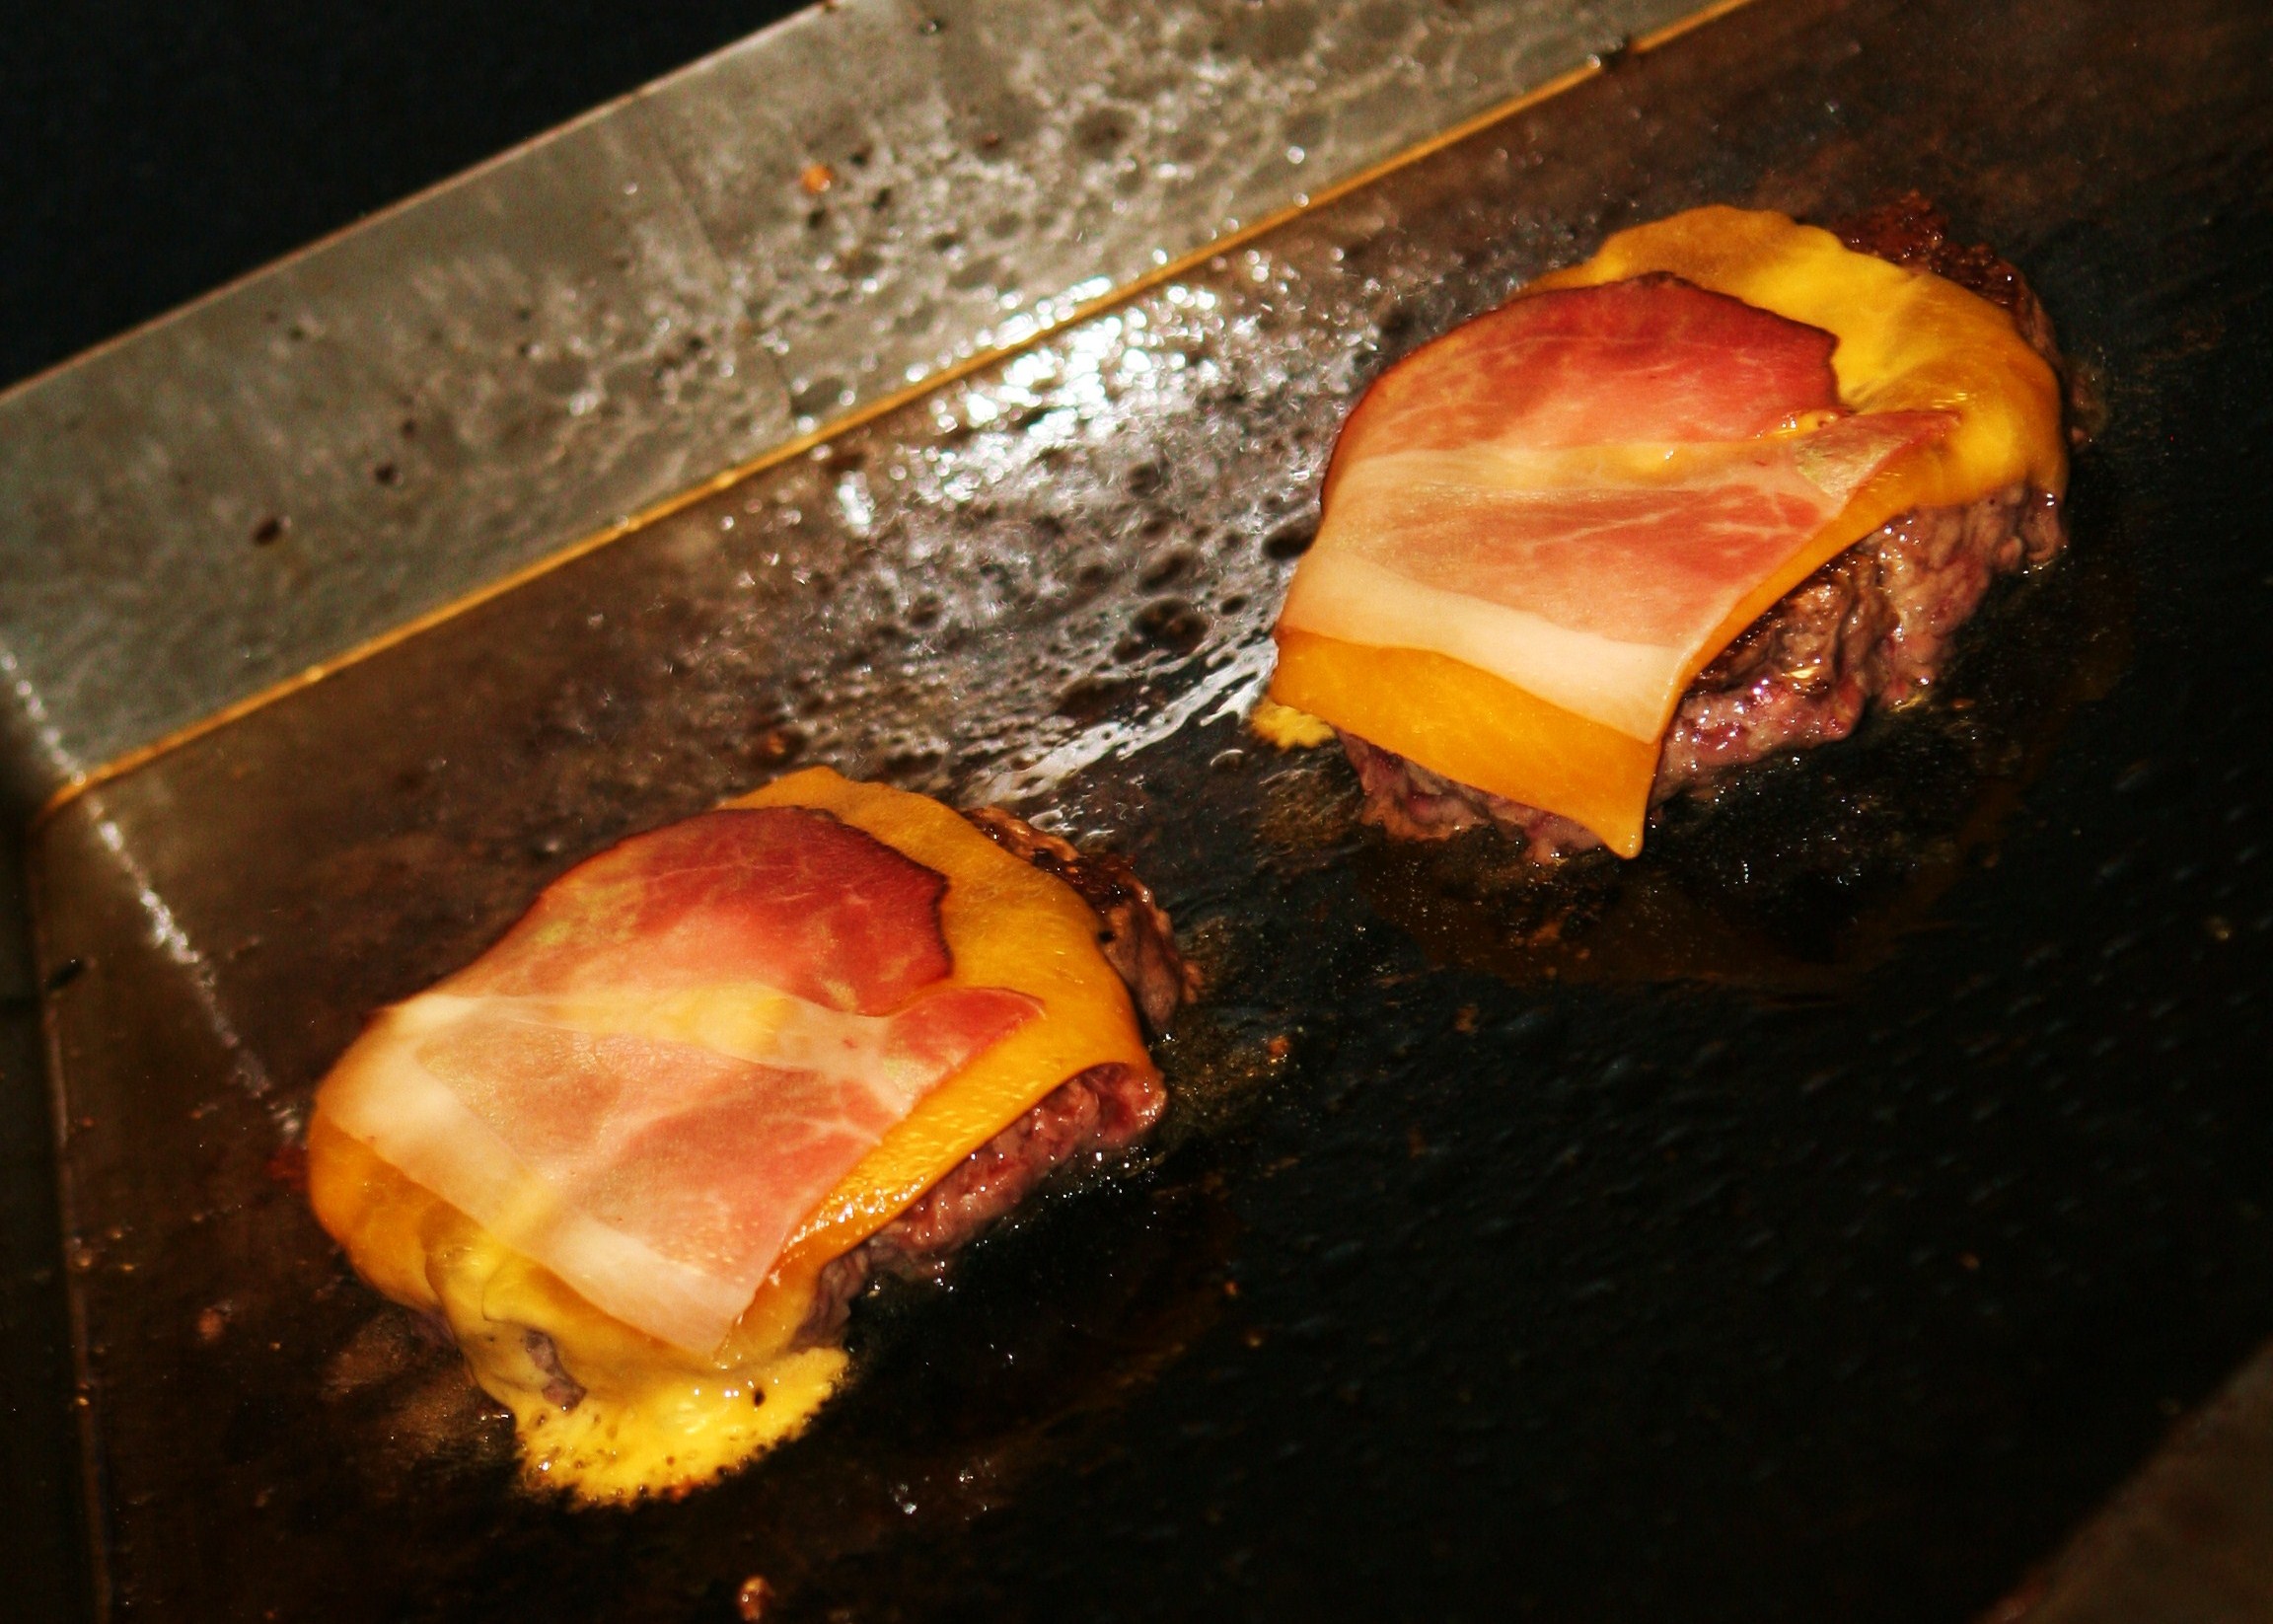 Csodáljuk meg másik szögből is ezeket a sajtos baconos húspogácsás csodákat!